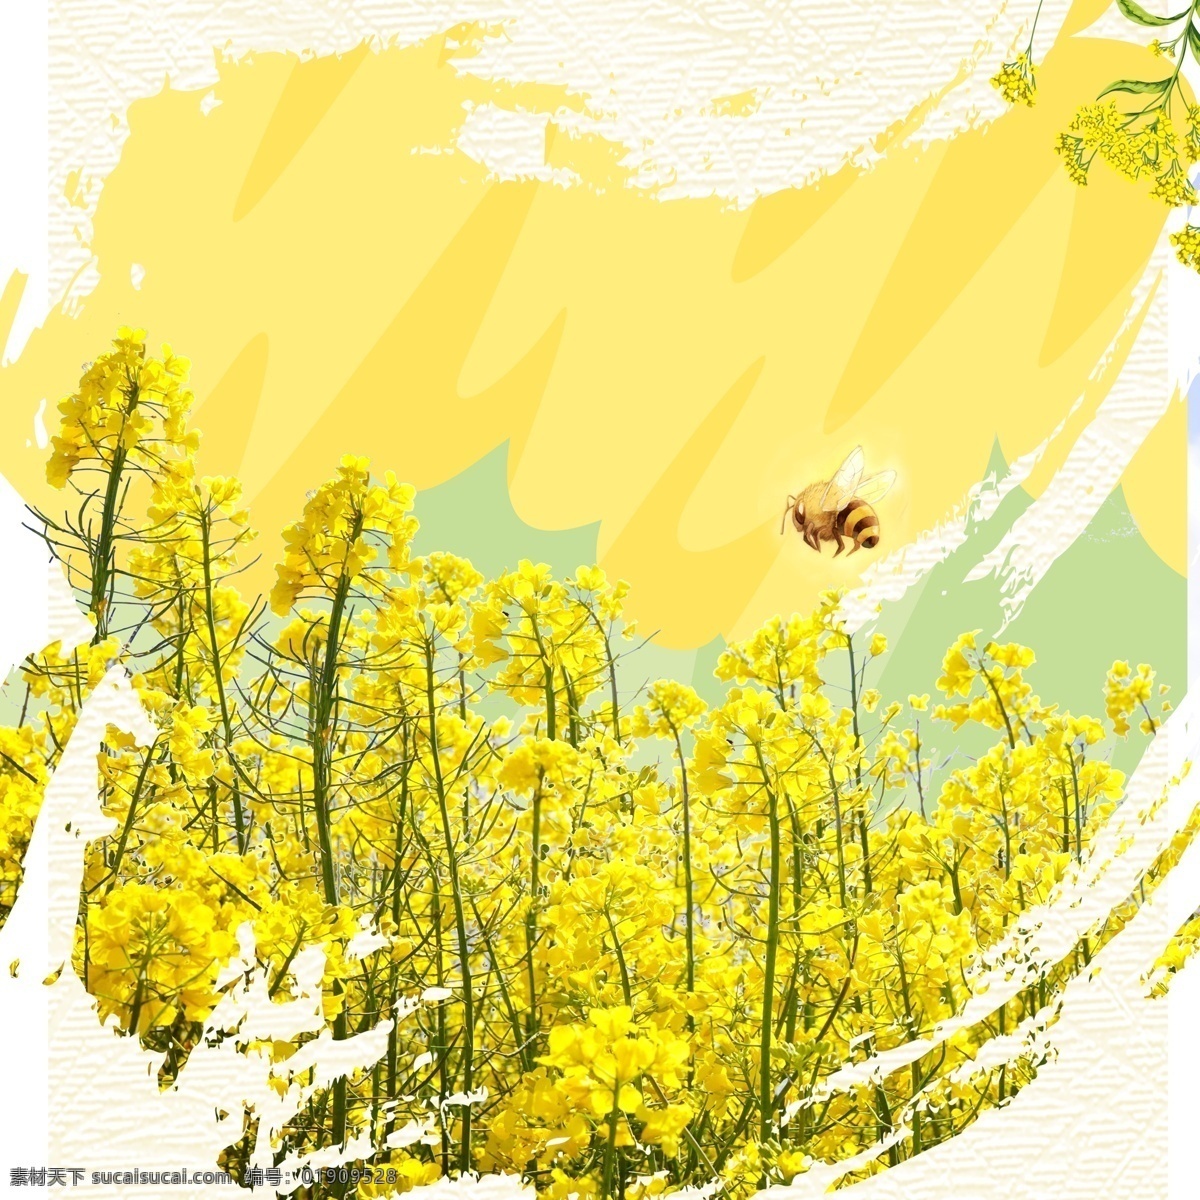 油菜花 蜜蜂 破碎 黄色 广告 背景 破碎背景元素 元素 黄色彩绘背景 花 叶子 广告素材